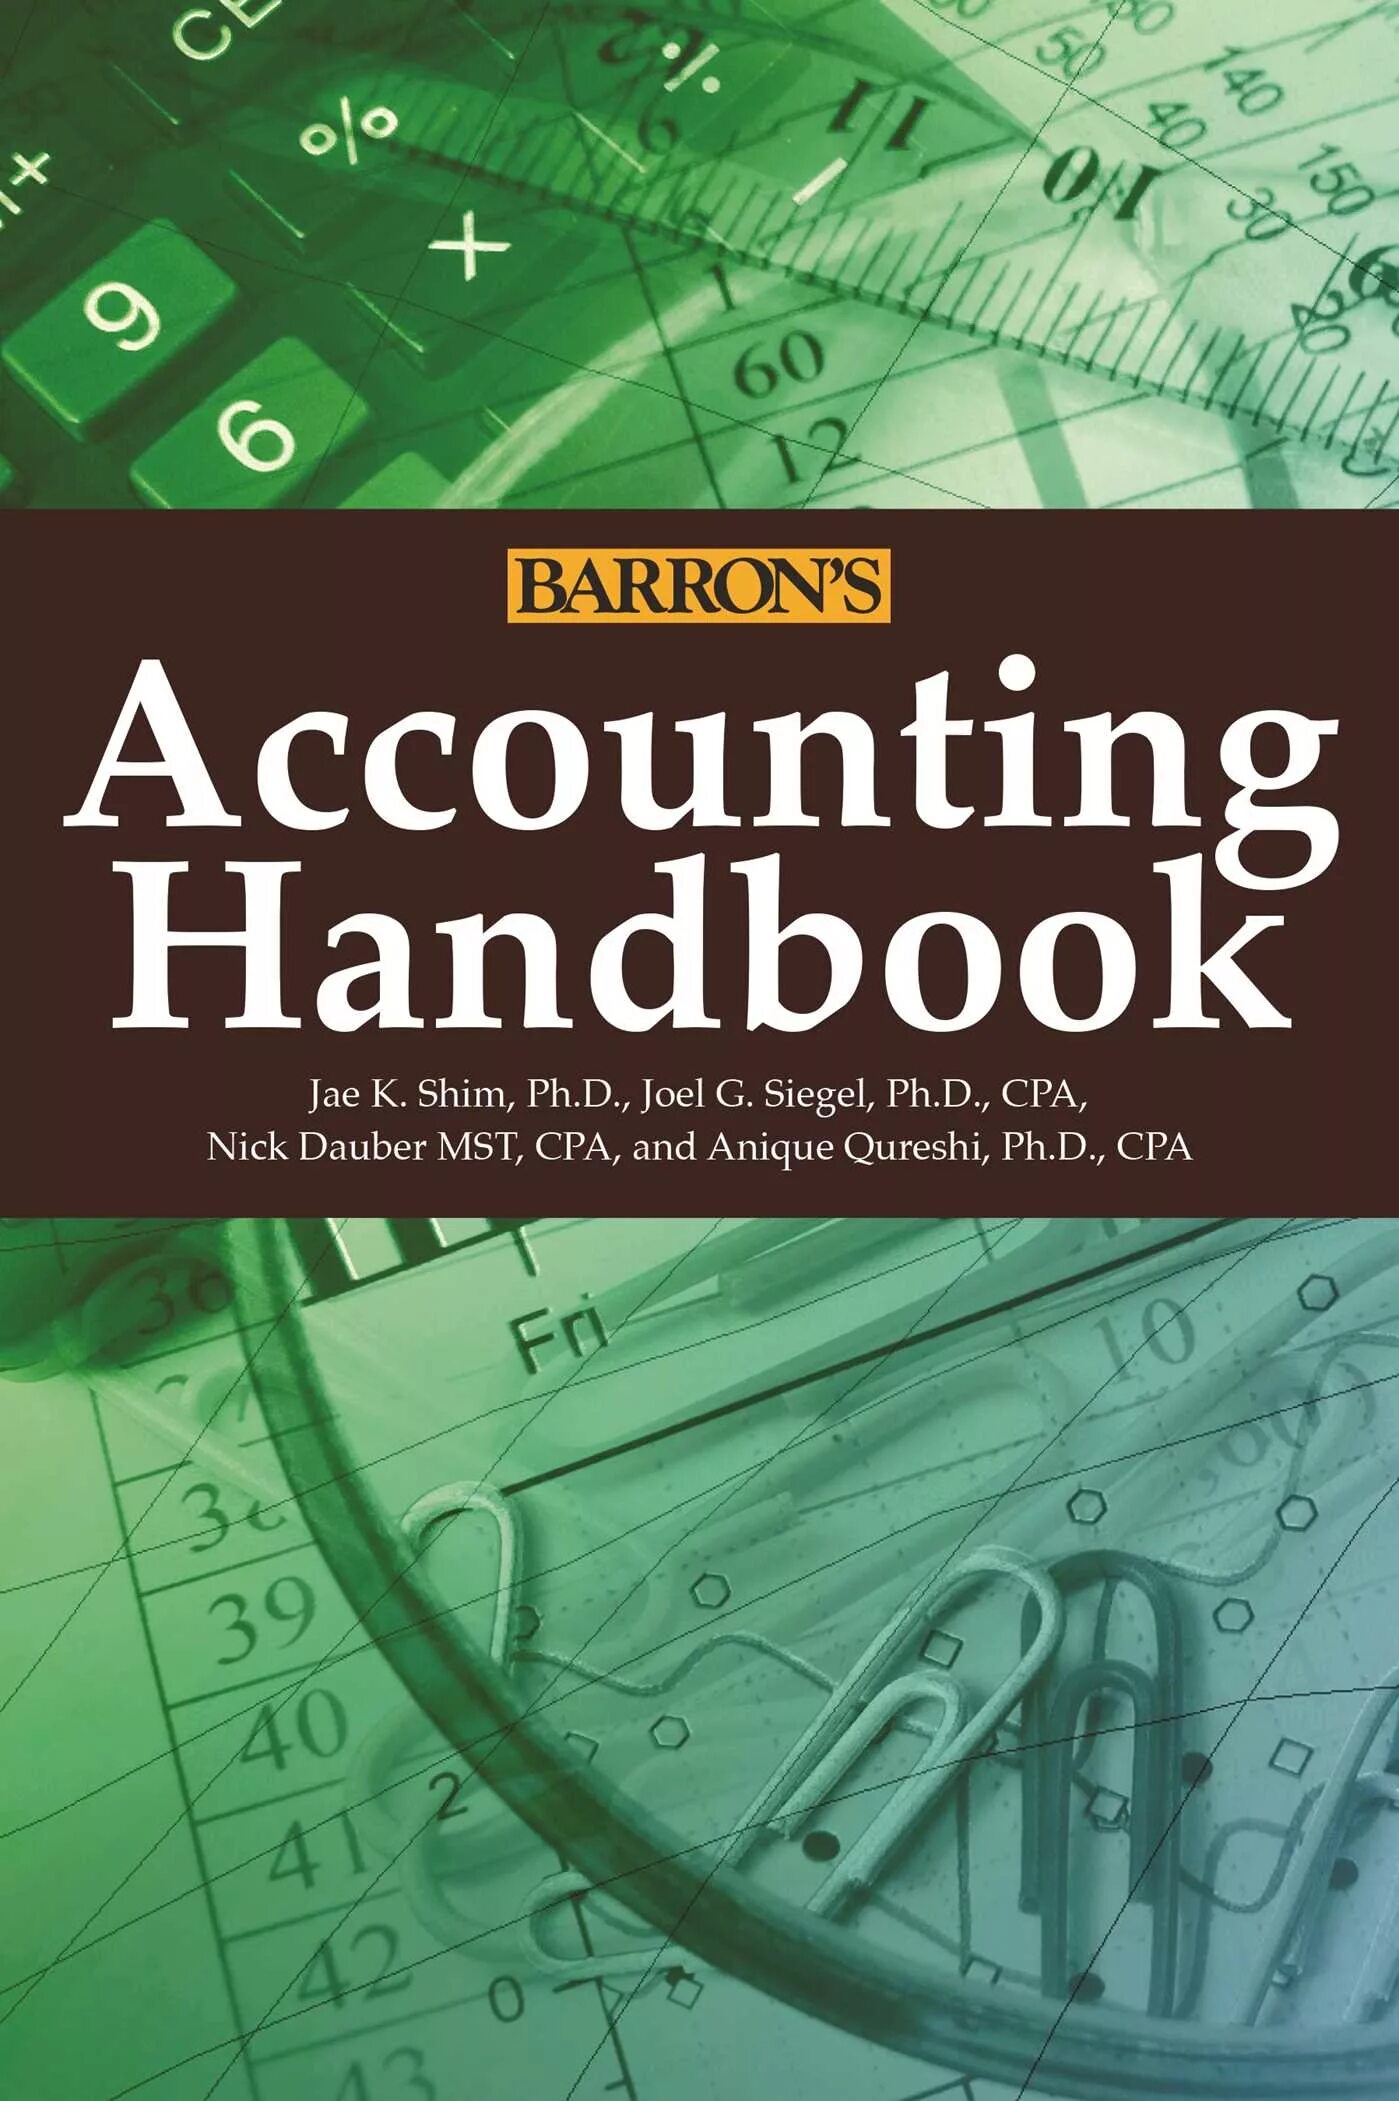 Accounting book. Accounting books. Accountant book. Account book. Financial Accounting books.